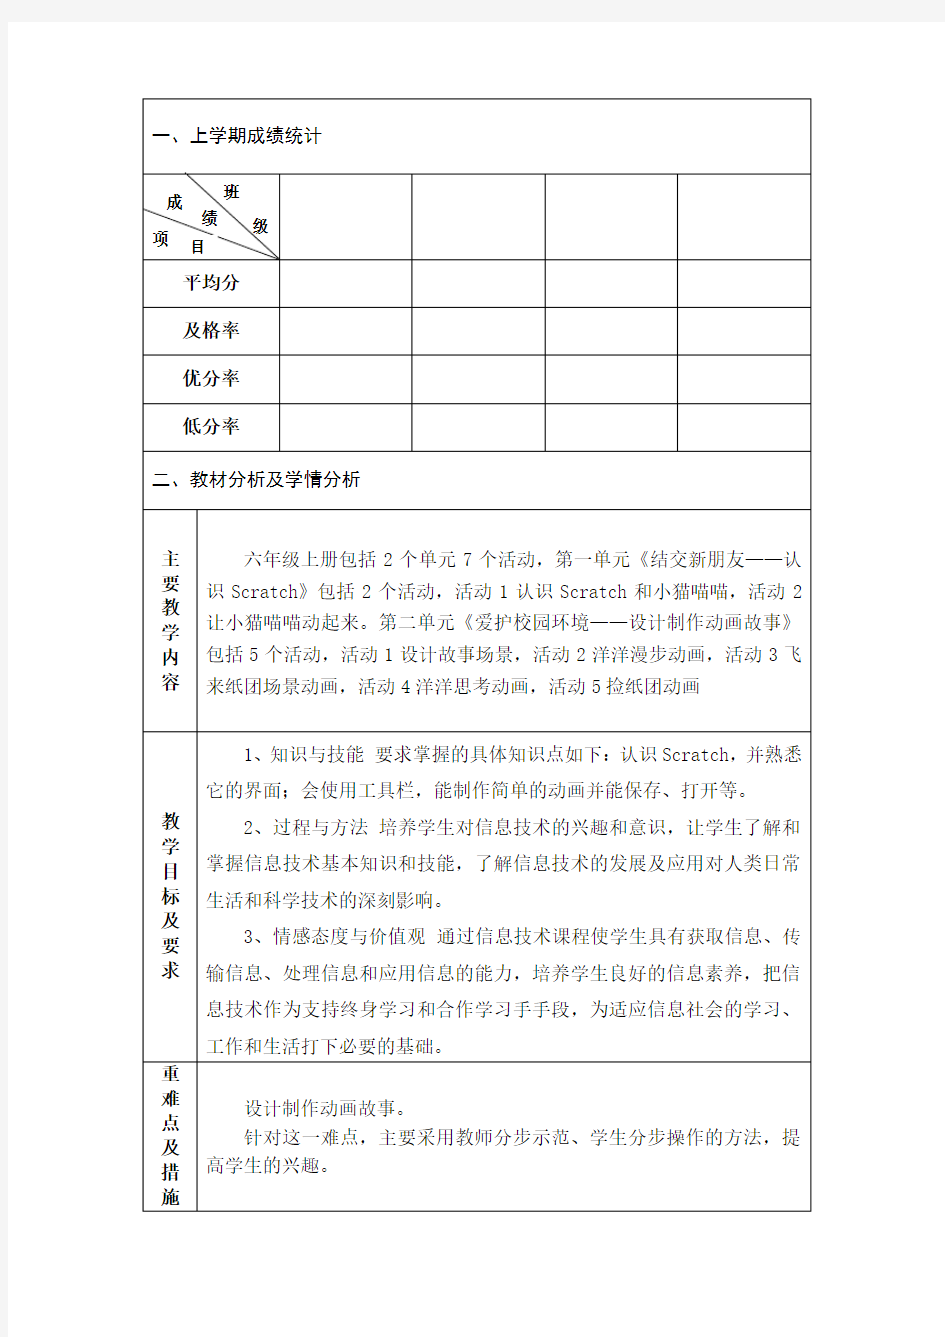 最新小学六年级信息技术上册教案贵州科技出版社